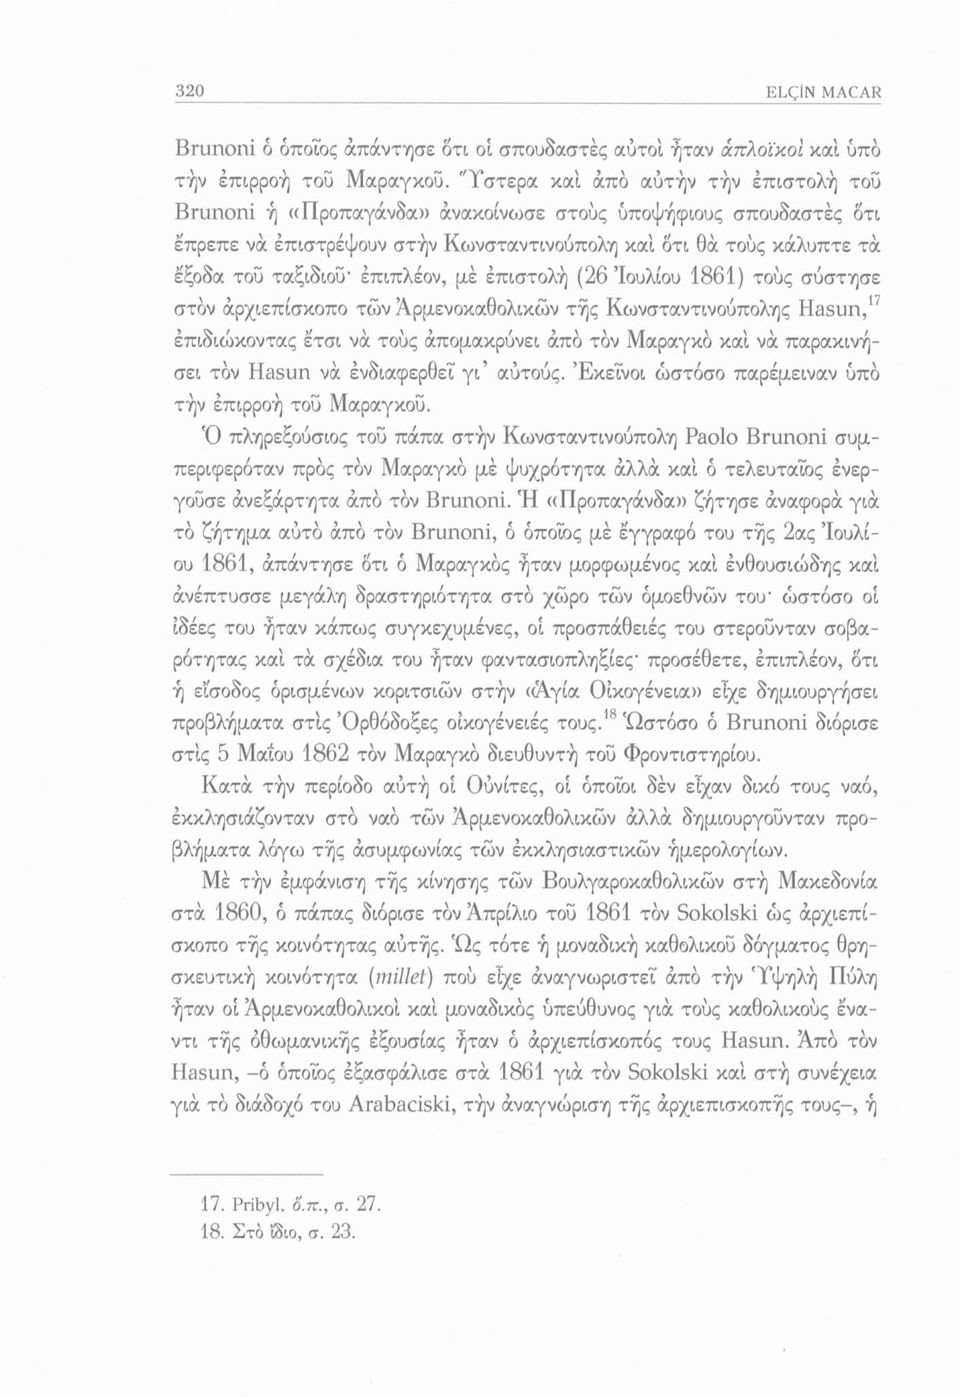 έπιπλέον, μέ επιστολή (26 Ιουλίου 1861) τούς σύστησε στον άρχιεπίσκοπο των Άρμενοκαθολικών τής Κωνσταντινούπολης Hasun,17 επιδιώκοντας έτσι να τούς άπομακρύνει άπό τον Μαραγκό καί να παρακινήσει τον